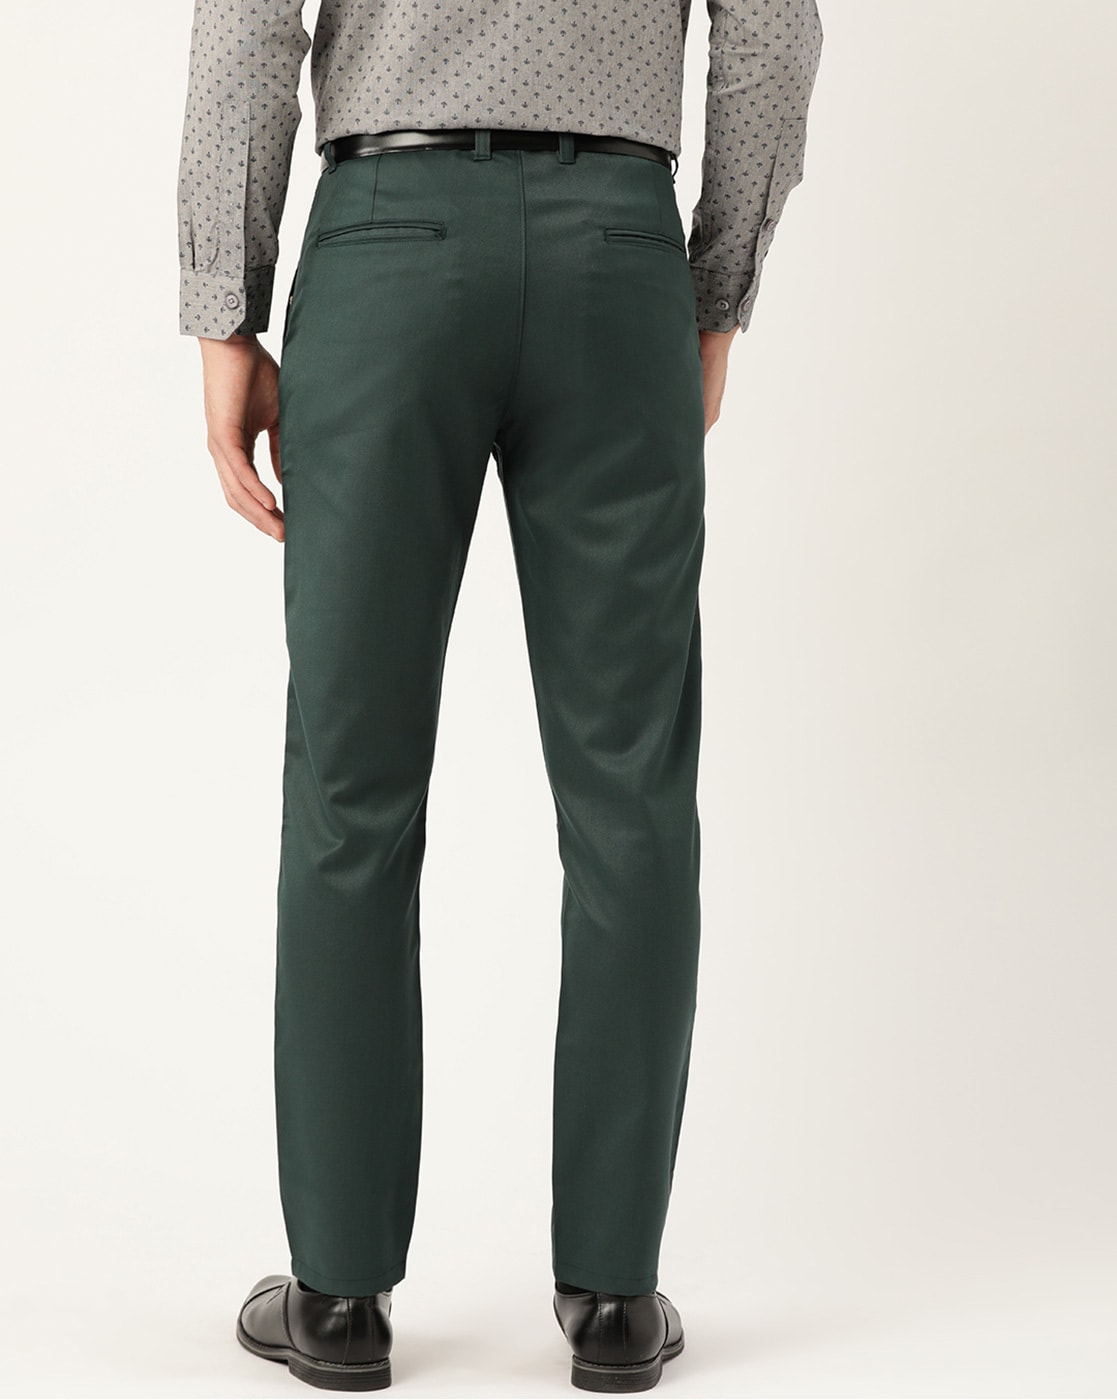 Green 3-piece pantsuit women, Formal Graduation Suit, Womens Wide Leg Pants  Suit | eBay